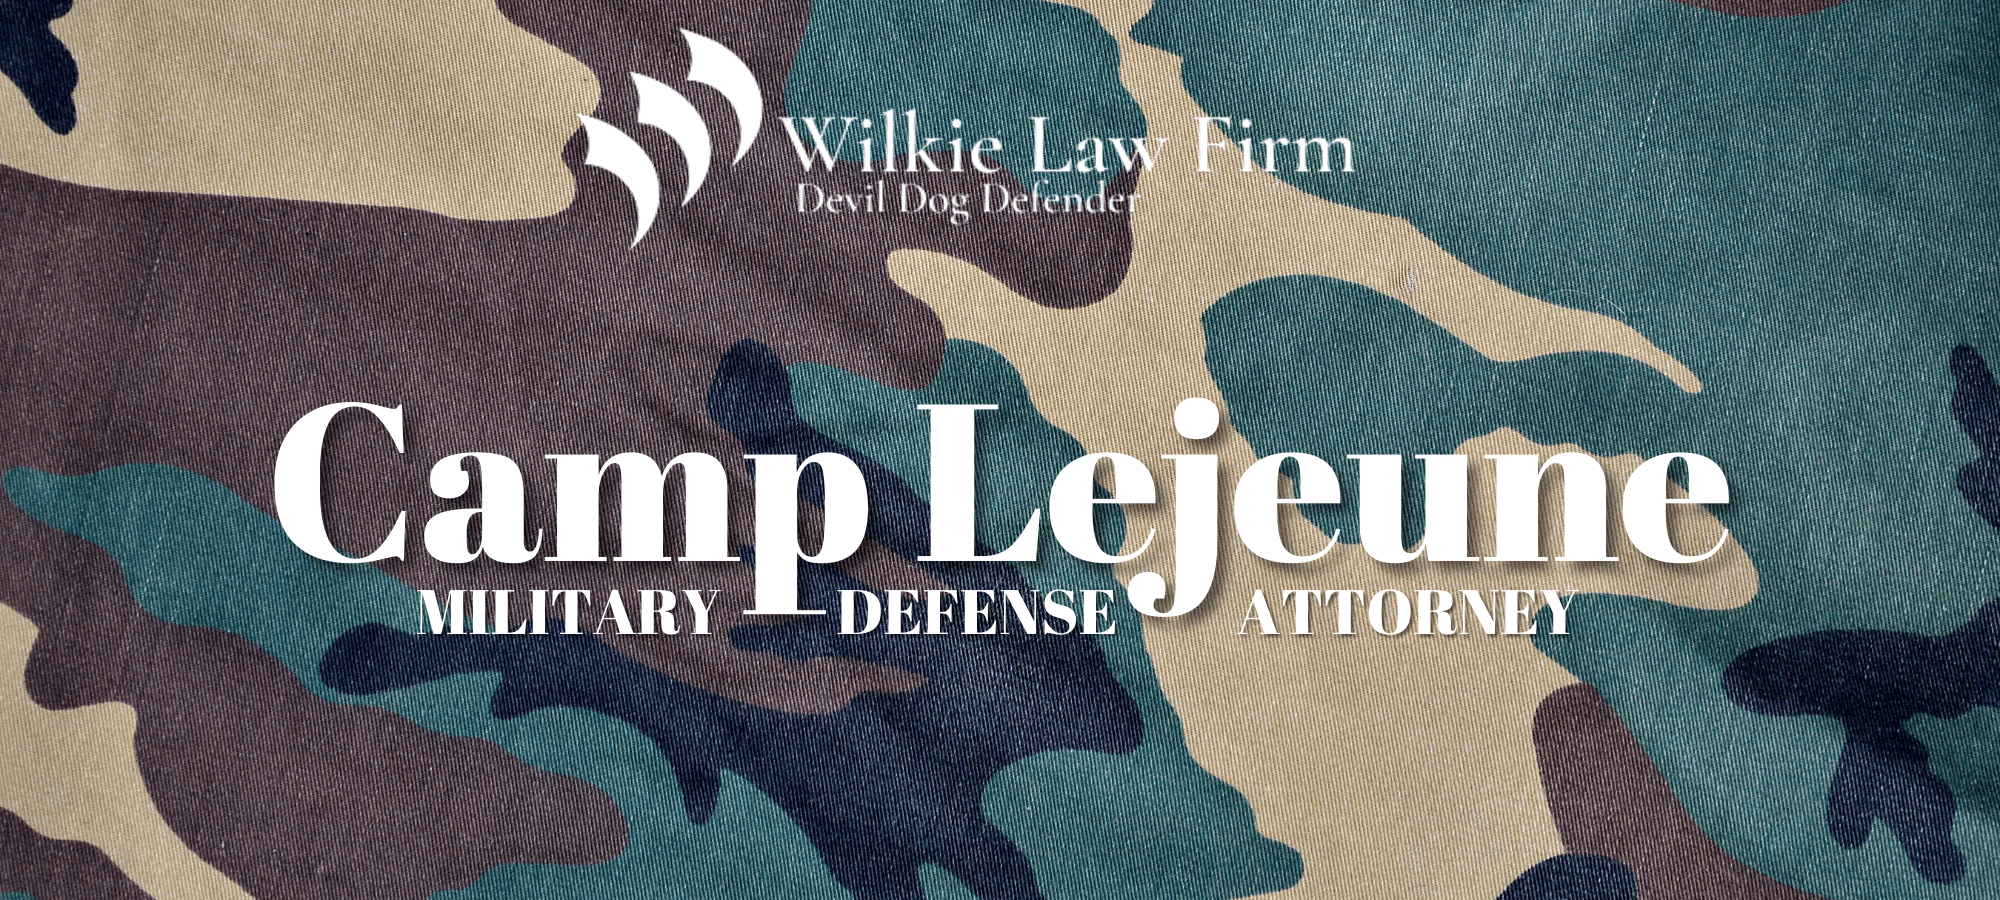 Camp legeune Military Defense Attorney